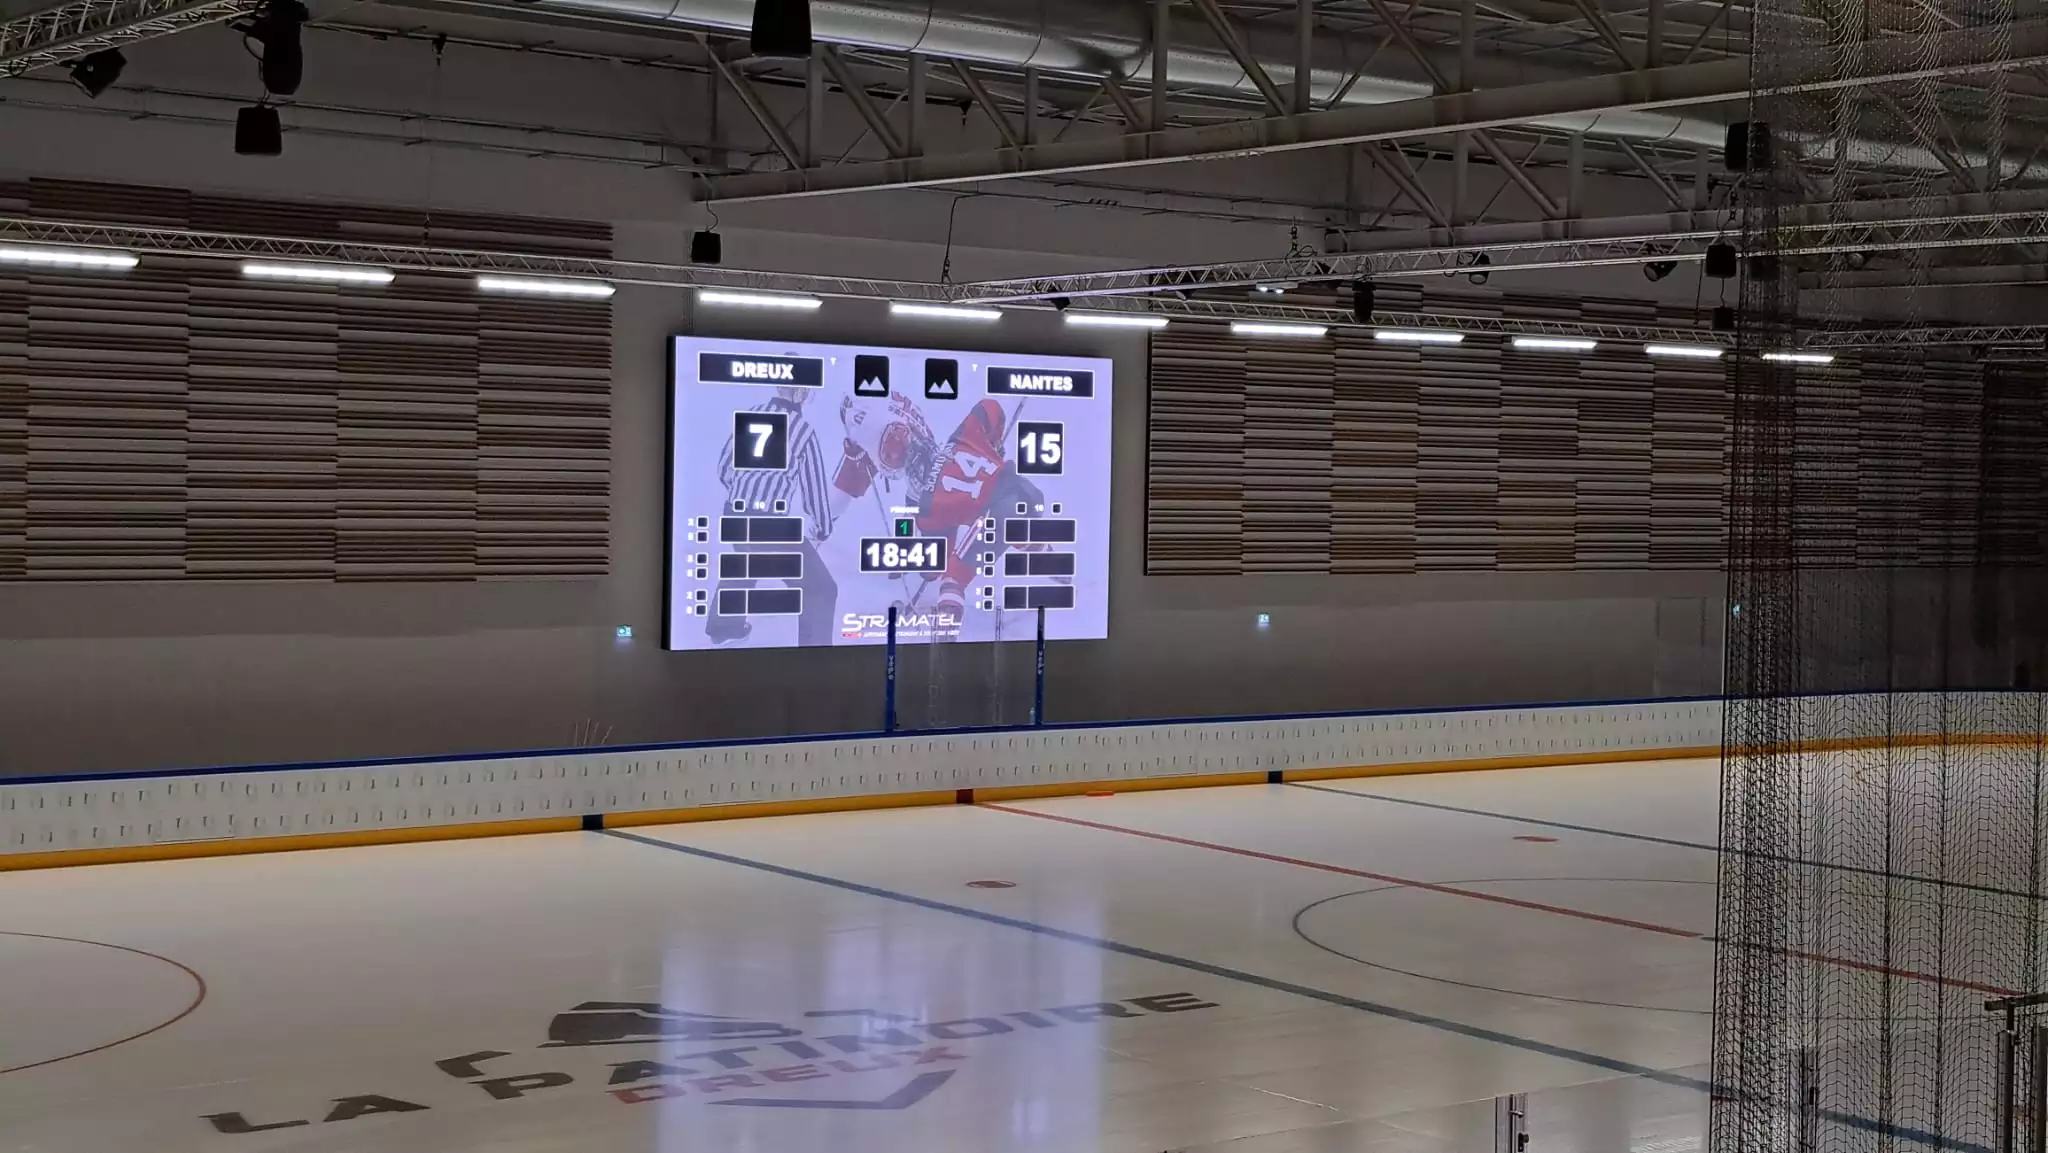 affichage des informations de score sur l'écran vidéo de la patinoir de Dreux par Stramatel